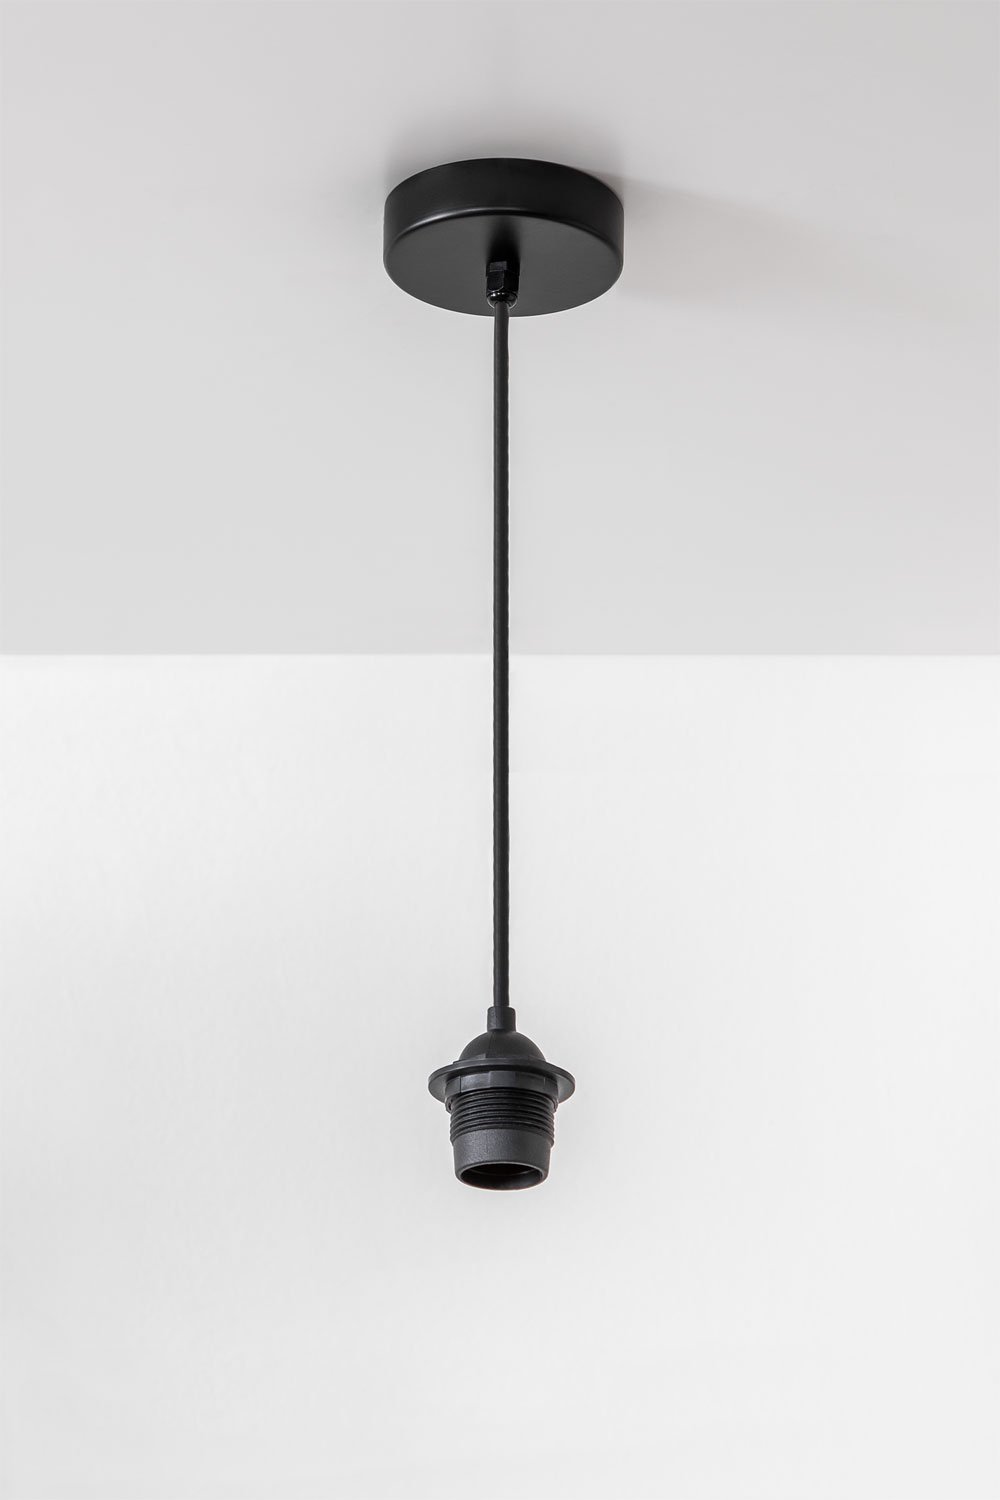 Kabel voor Buitenplafondlamp Claudel, galerij beeld 1